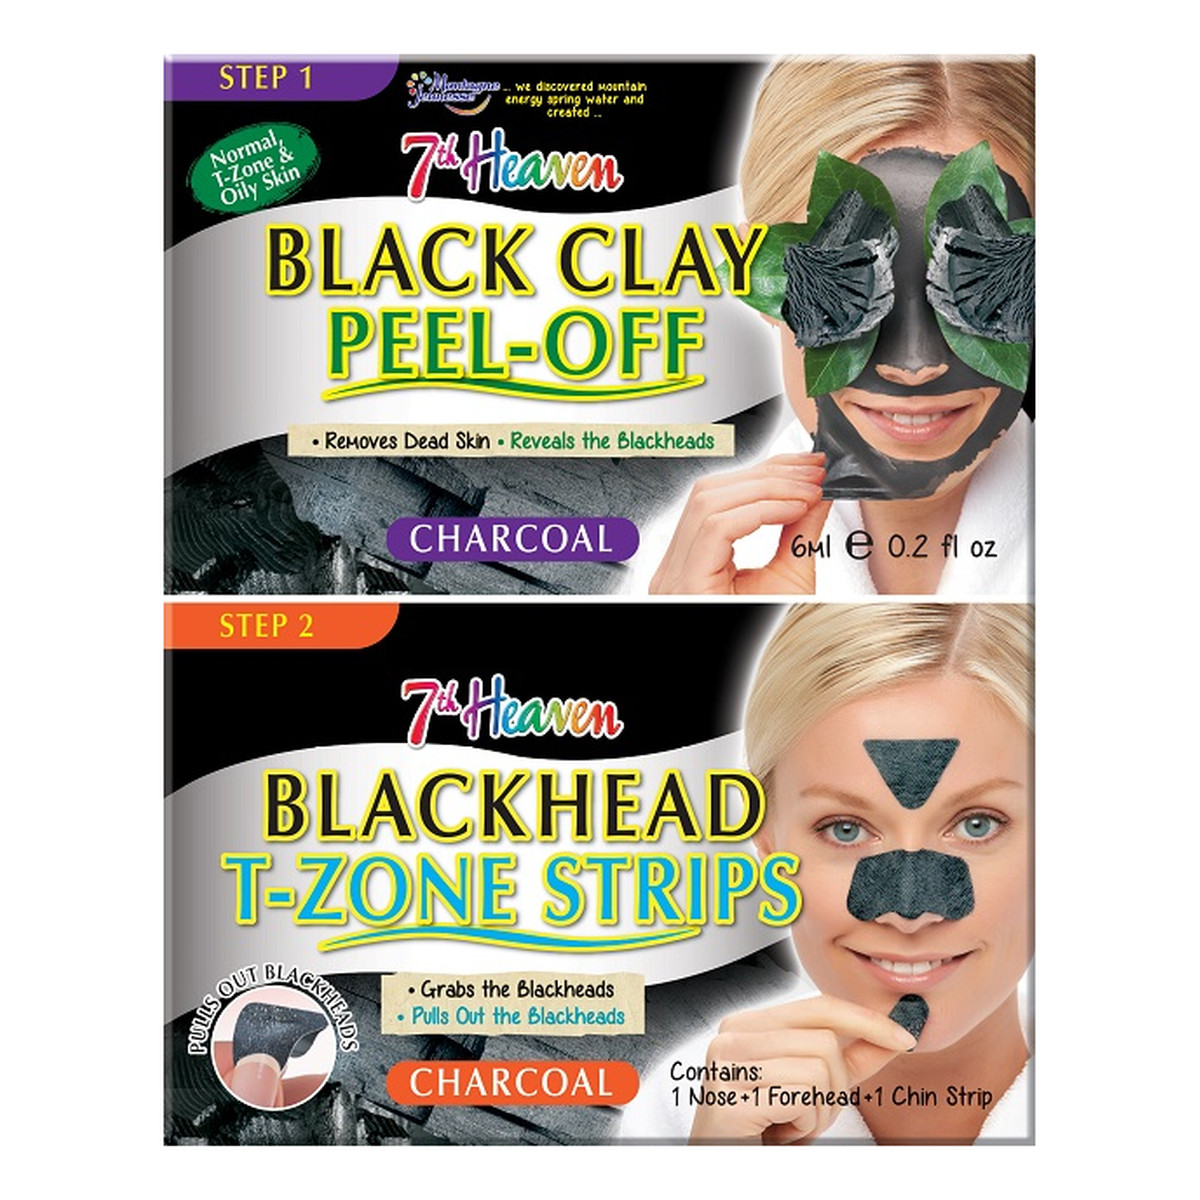 7th Heaven Charcoal Duo Black Clay Peel Off Węglowa maseczka do twarzy Black Clay + Blackhead T-Zone Strips paski na nos, brodę i czoło niwelujące zaskórniki